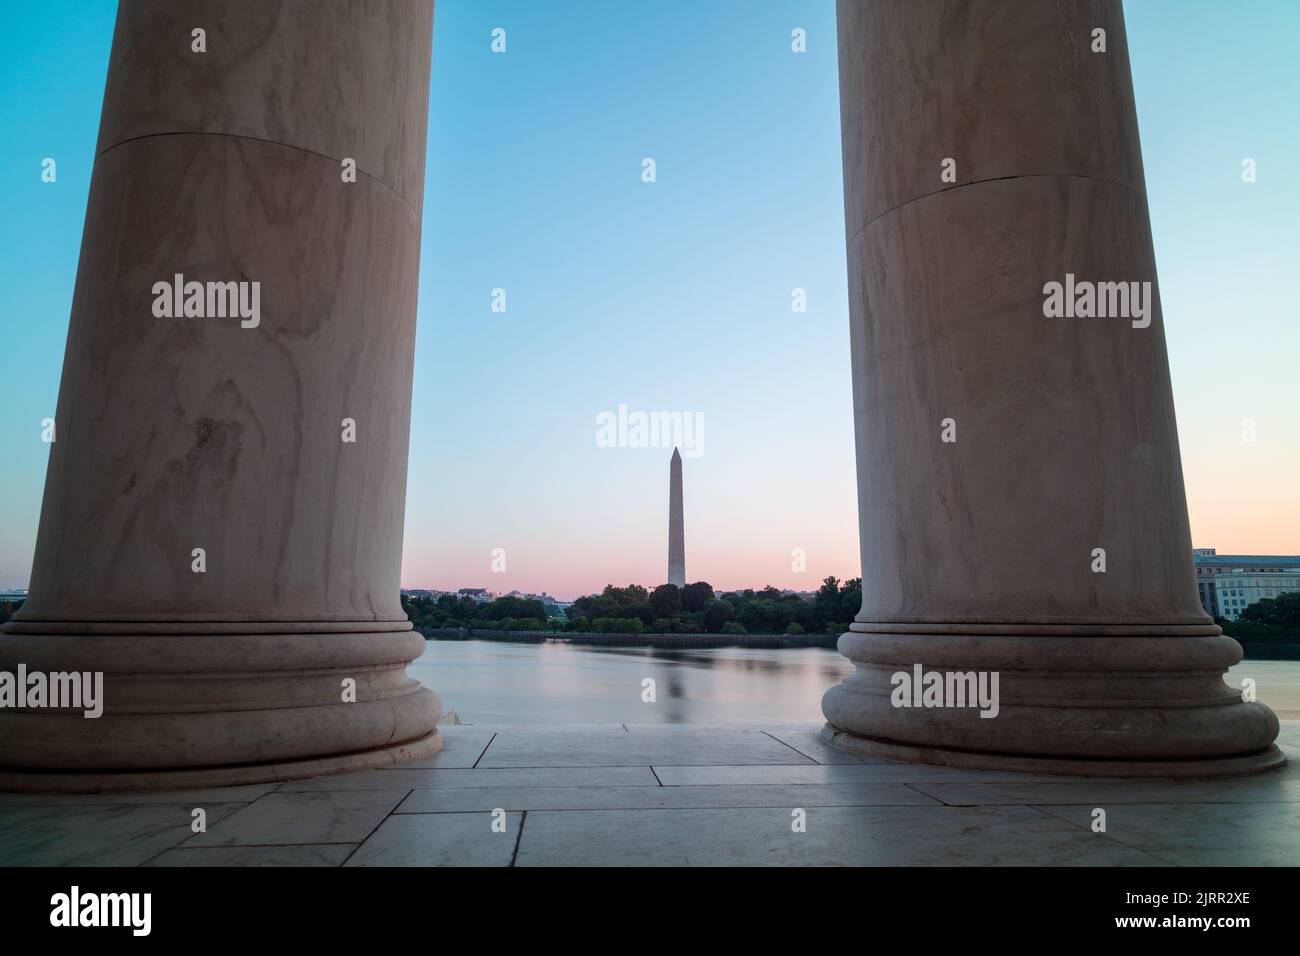 Le Washington Monument et la Maison Blanche sont vus de l'autre côté du bassin de Tidal, encadré par deux colonnes dans le Jefferson Memorial. Lever du soleil en été. Banque D'Images